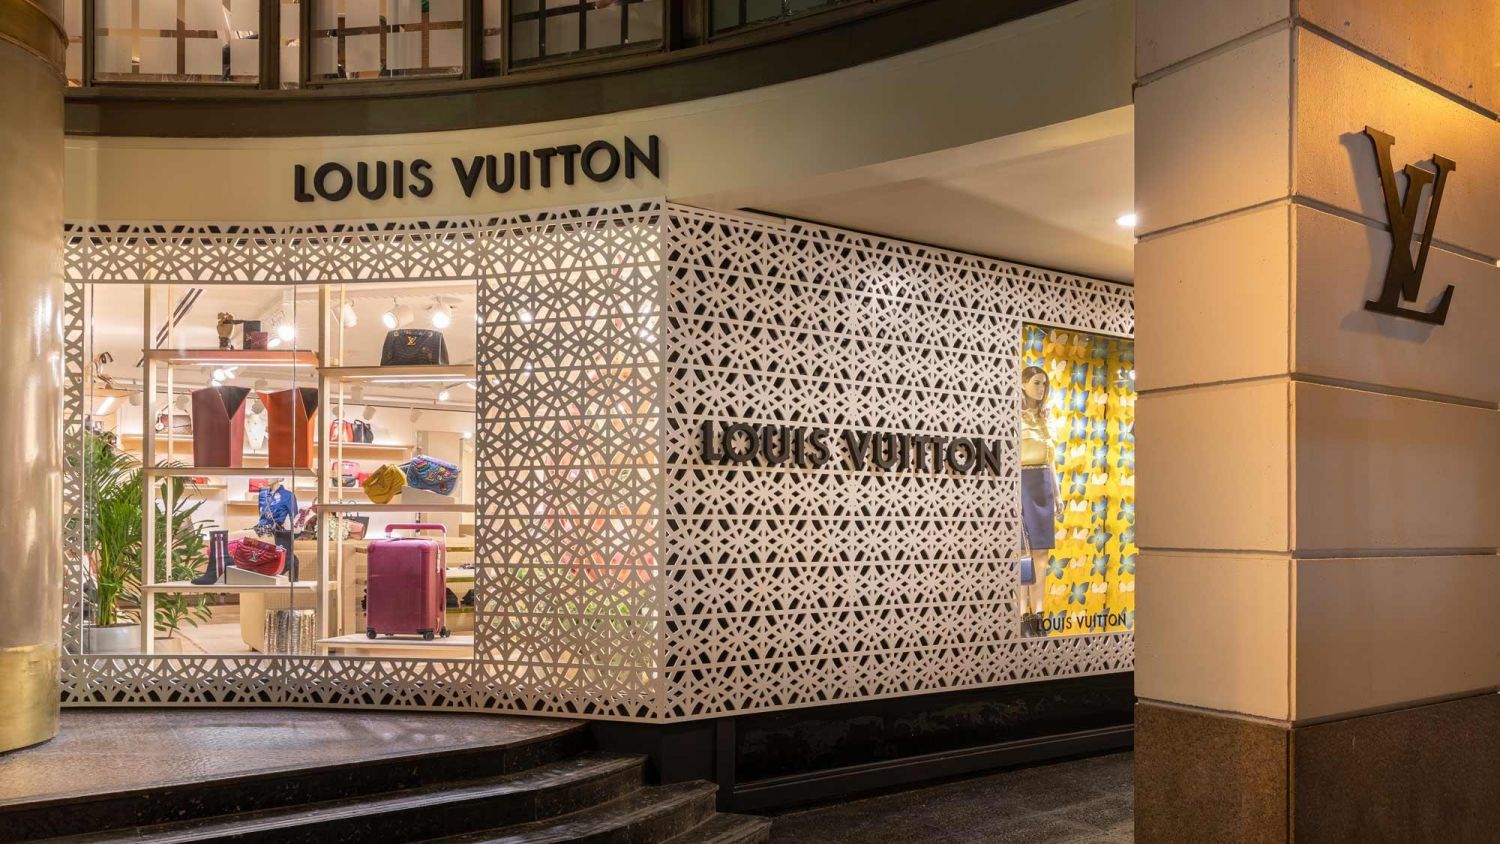 Las mejores ofertas en Louis Vuitton sudaderas de algodón para hombres